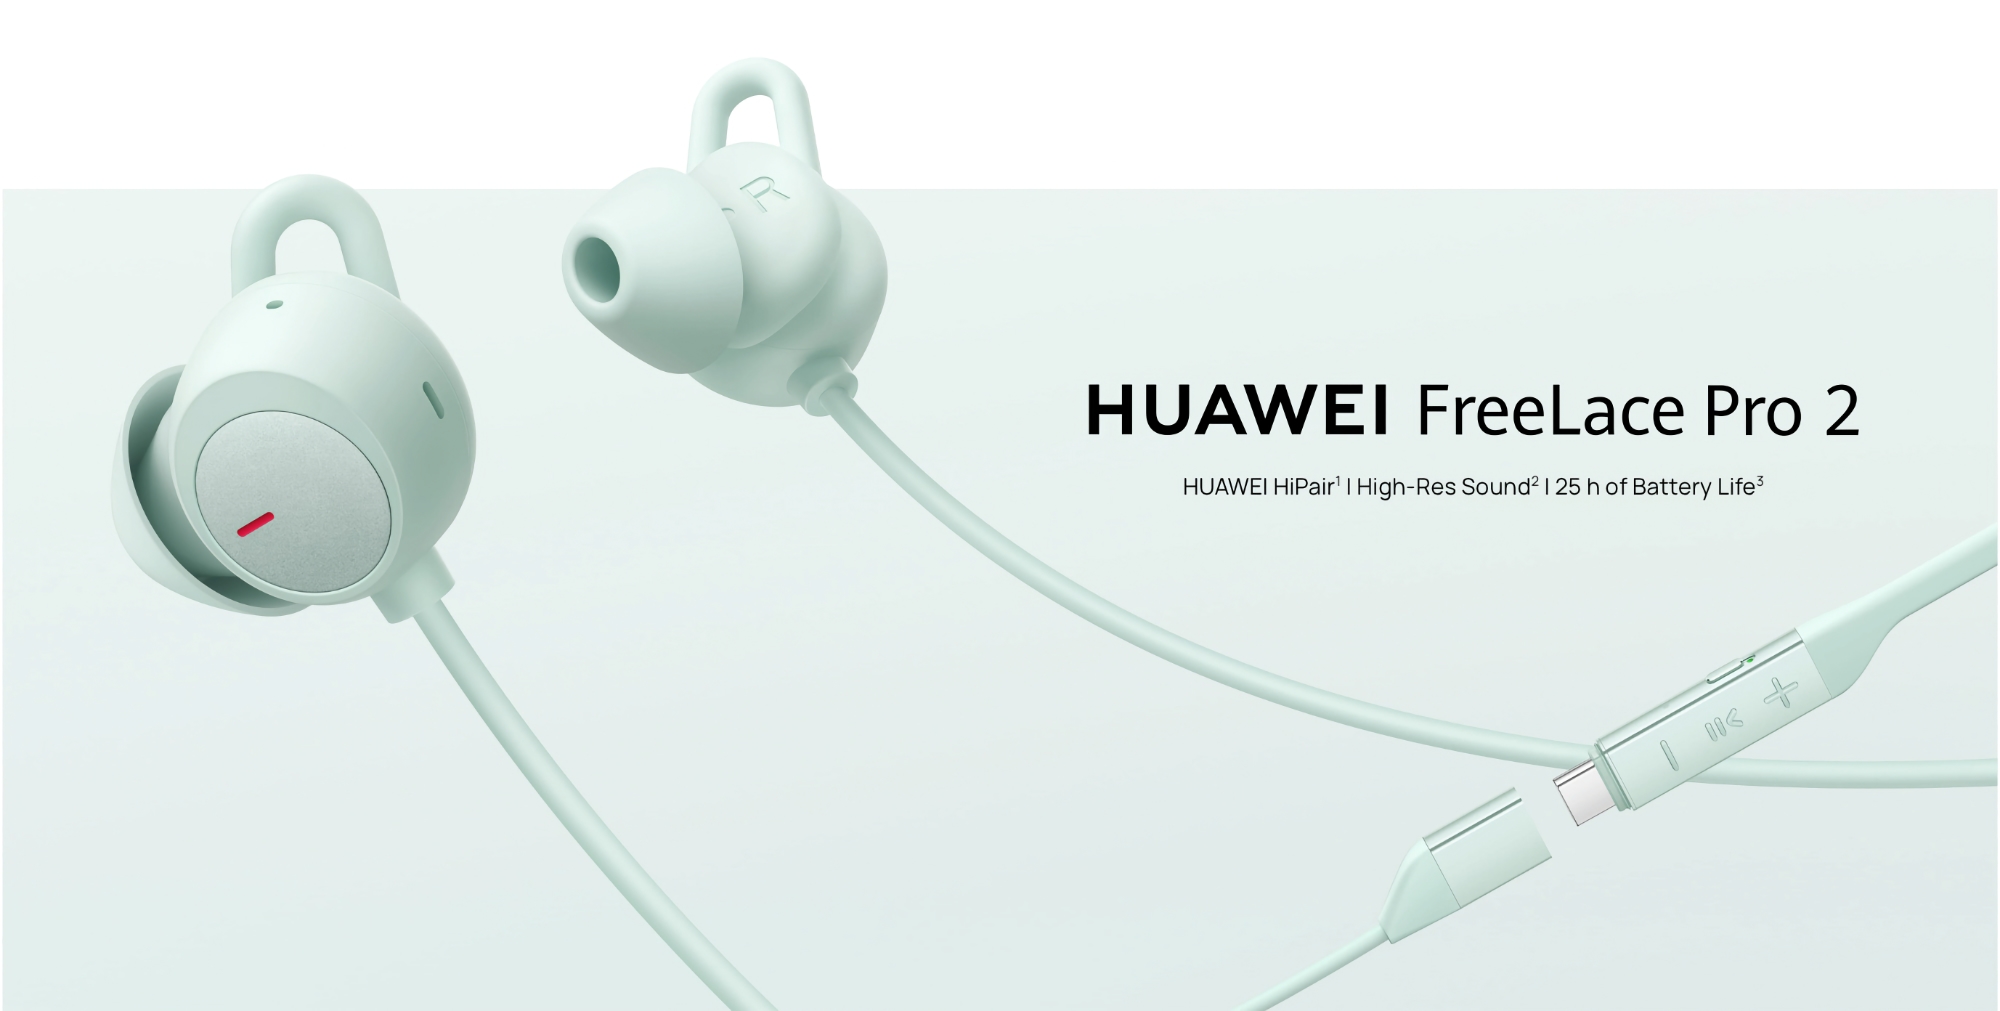 Huawei ha lanzado el FreeLace Pro 2 con ANC y hasta 25 horas de autonomía en el mercado mundial